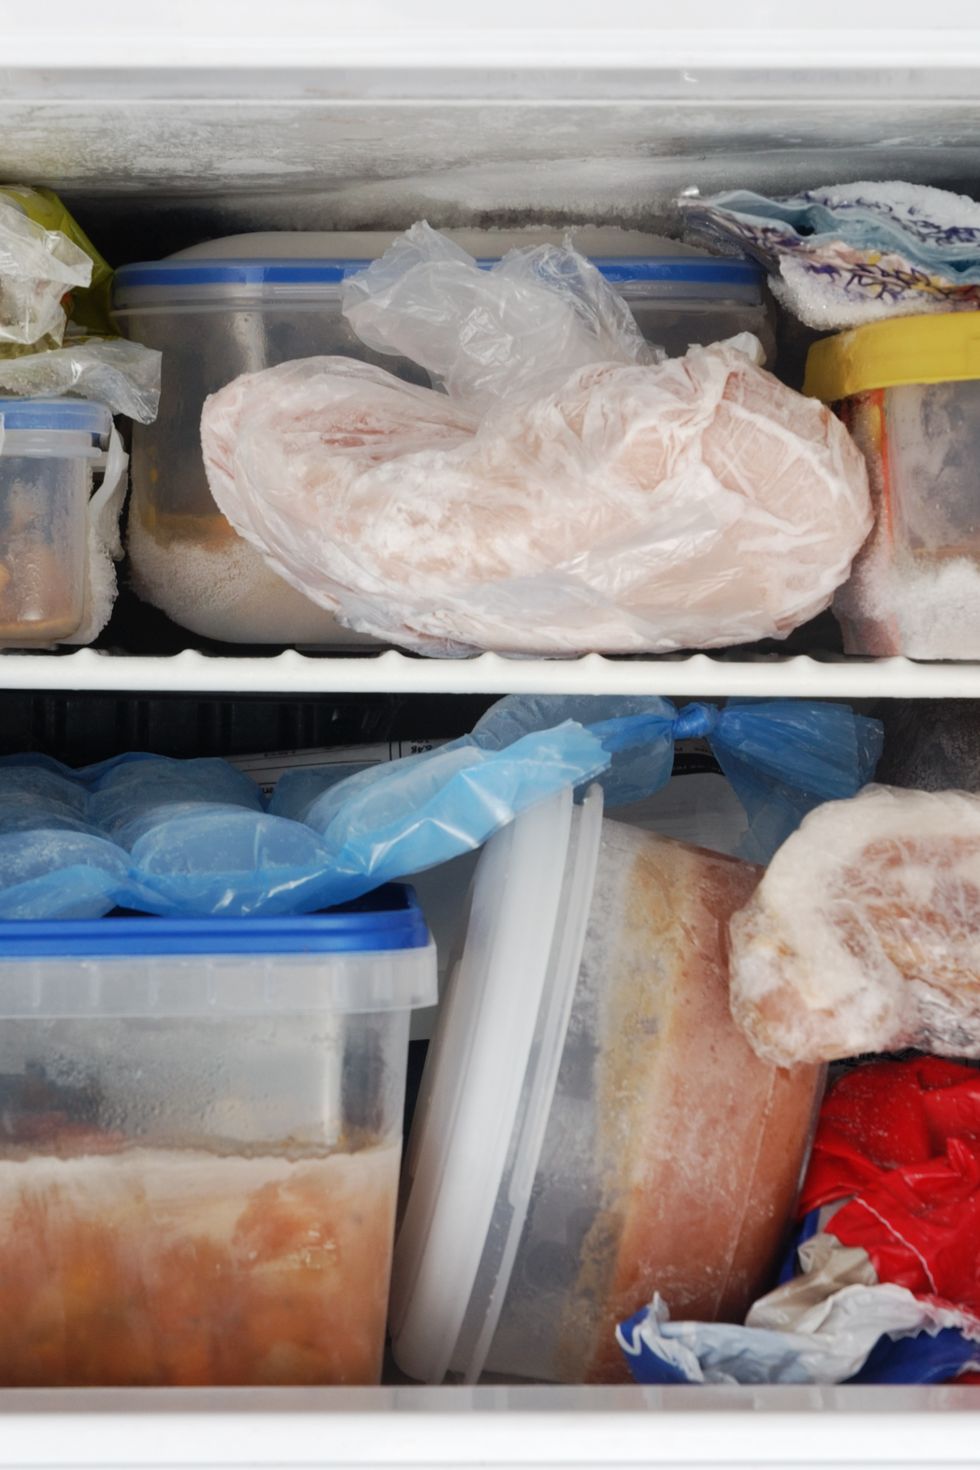 The fridge storage hack that keeps your fruit & veg fresh for longer